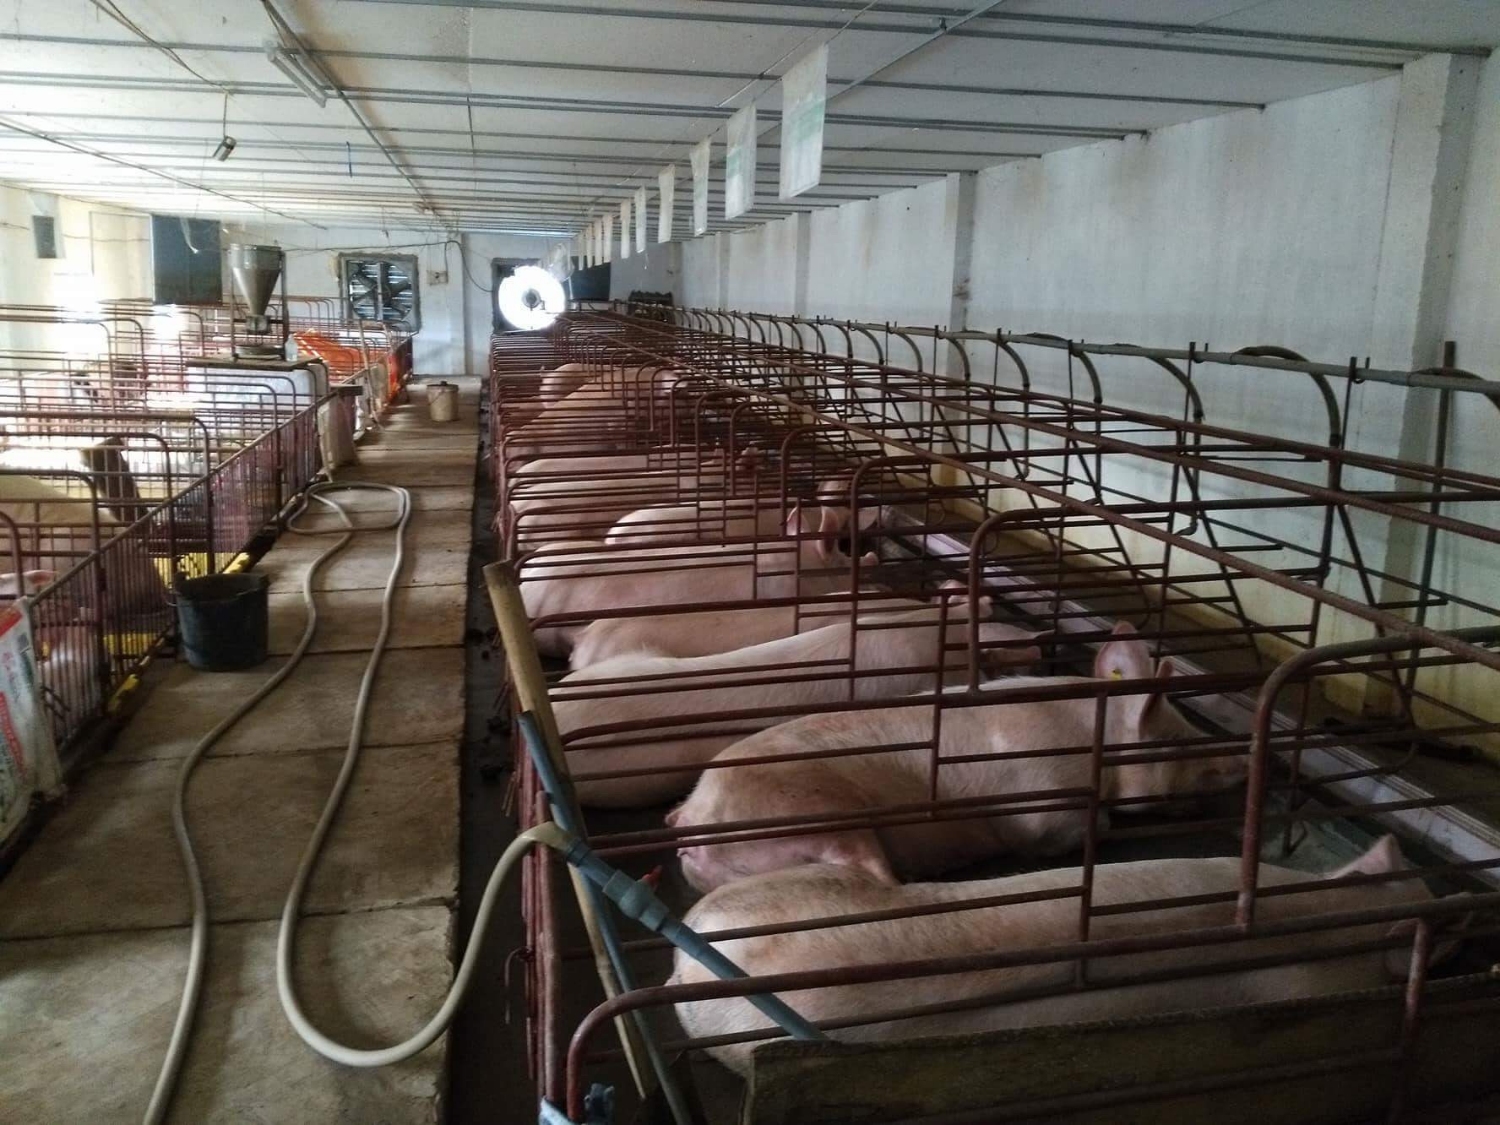 Chăn nuôi lợn tỉnh Thái Bình - Những tín hiệu vui qua số liệu Điều tra chăn nuôi thời điểm 01/7/2018